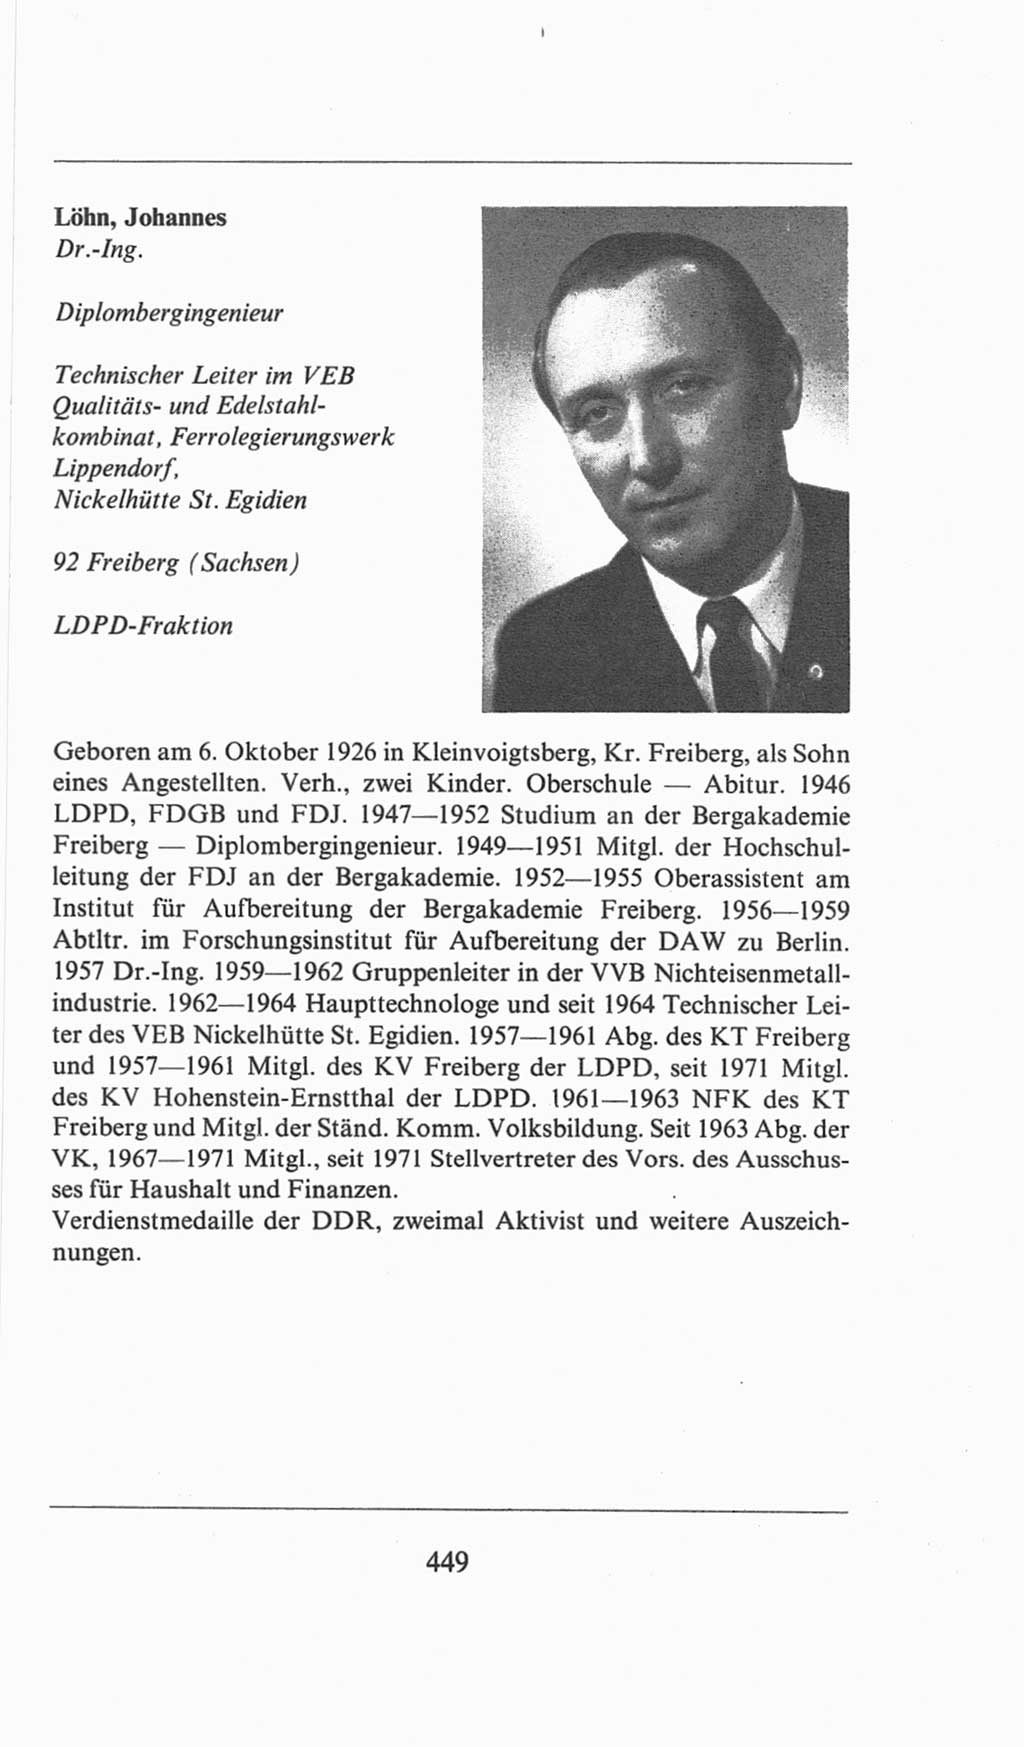 Volkskammer (VK) der Deutschen Demokratischen Republik (DDR), 6. Wahlperiode 1971-1976, Seite 449 (VK. DDR 6. WP. 1971-1976, S. 449)